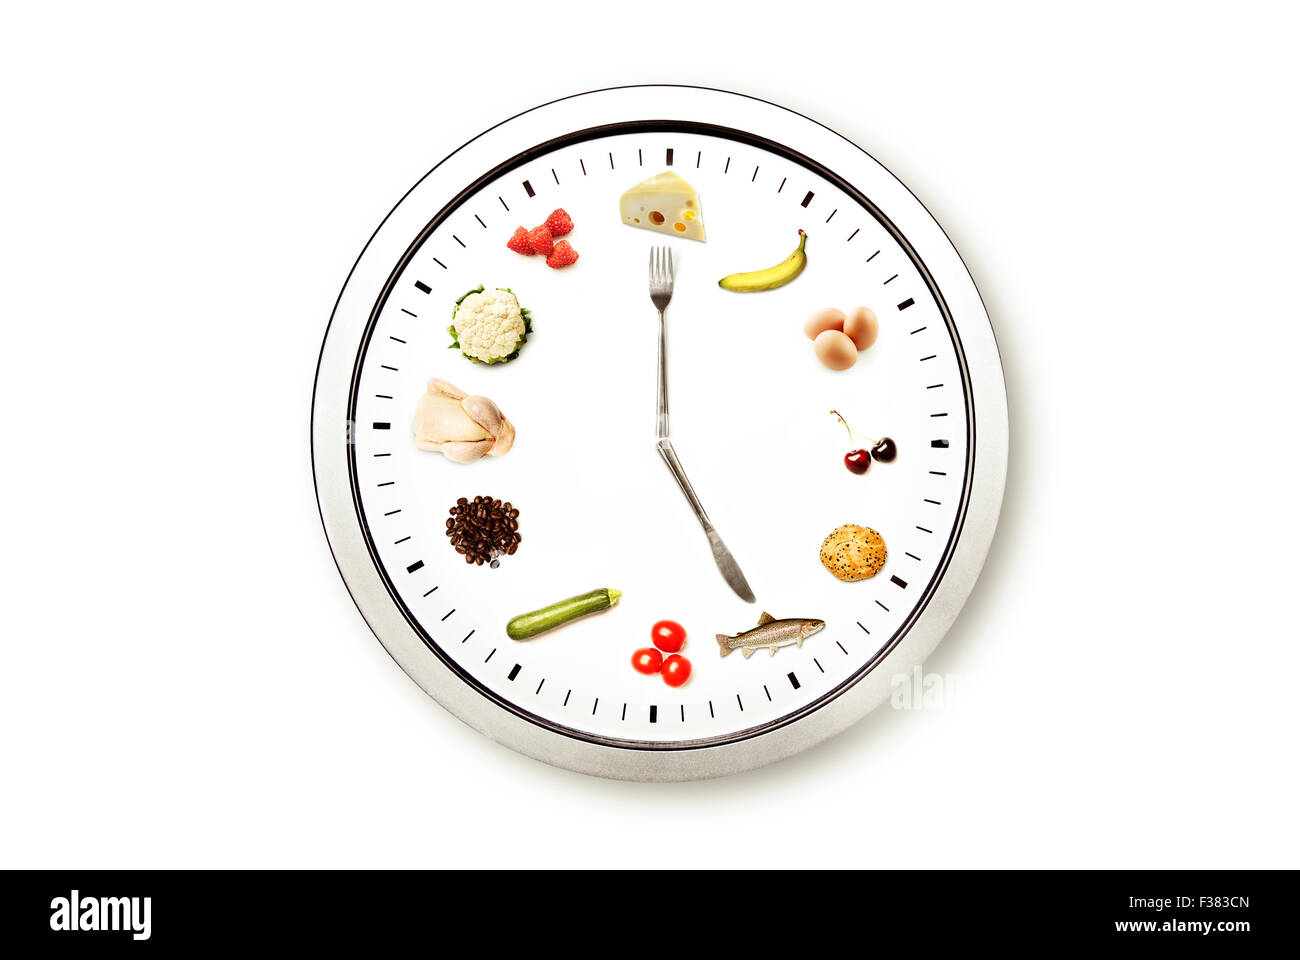 Tiempo para comer, imagen conceptual para la dieta y la nutrición Foto de stock